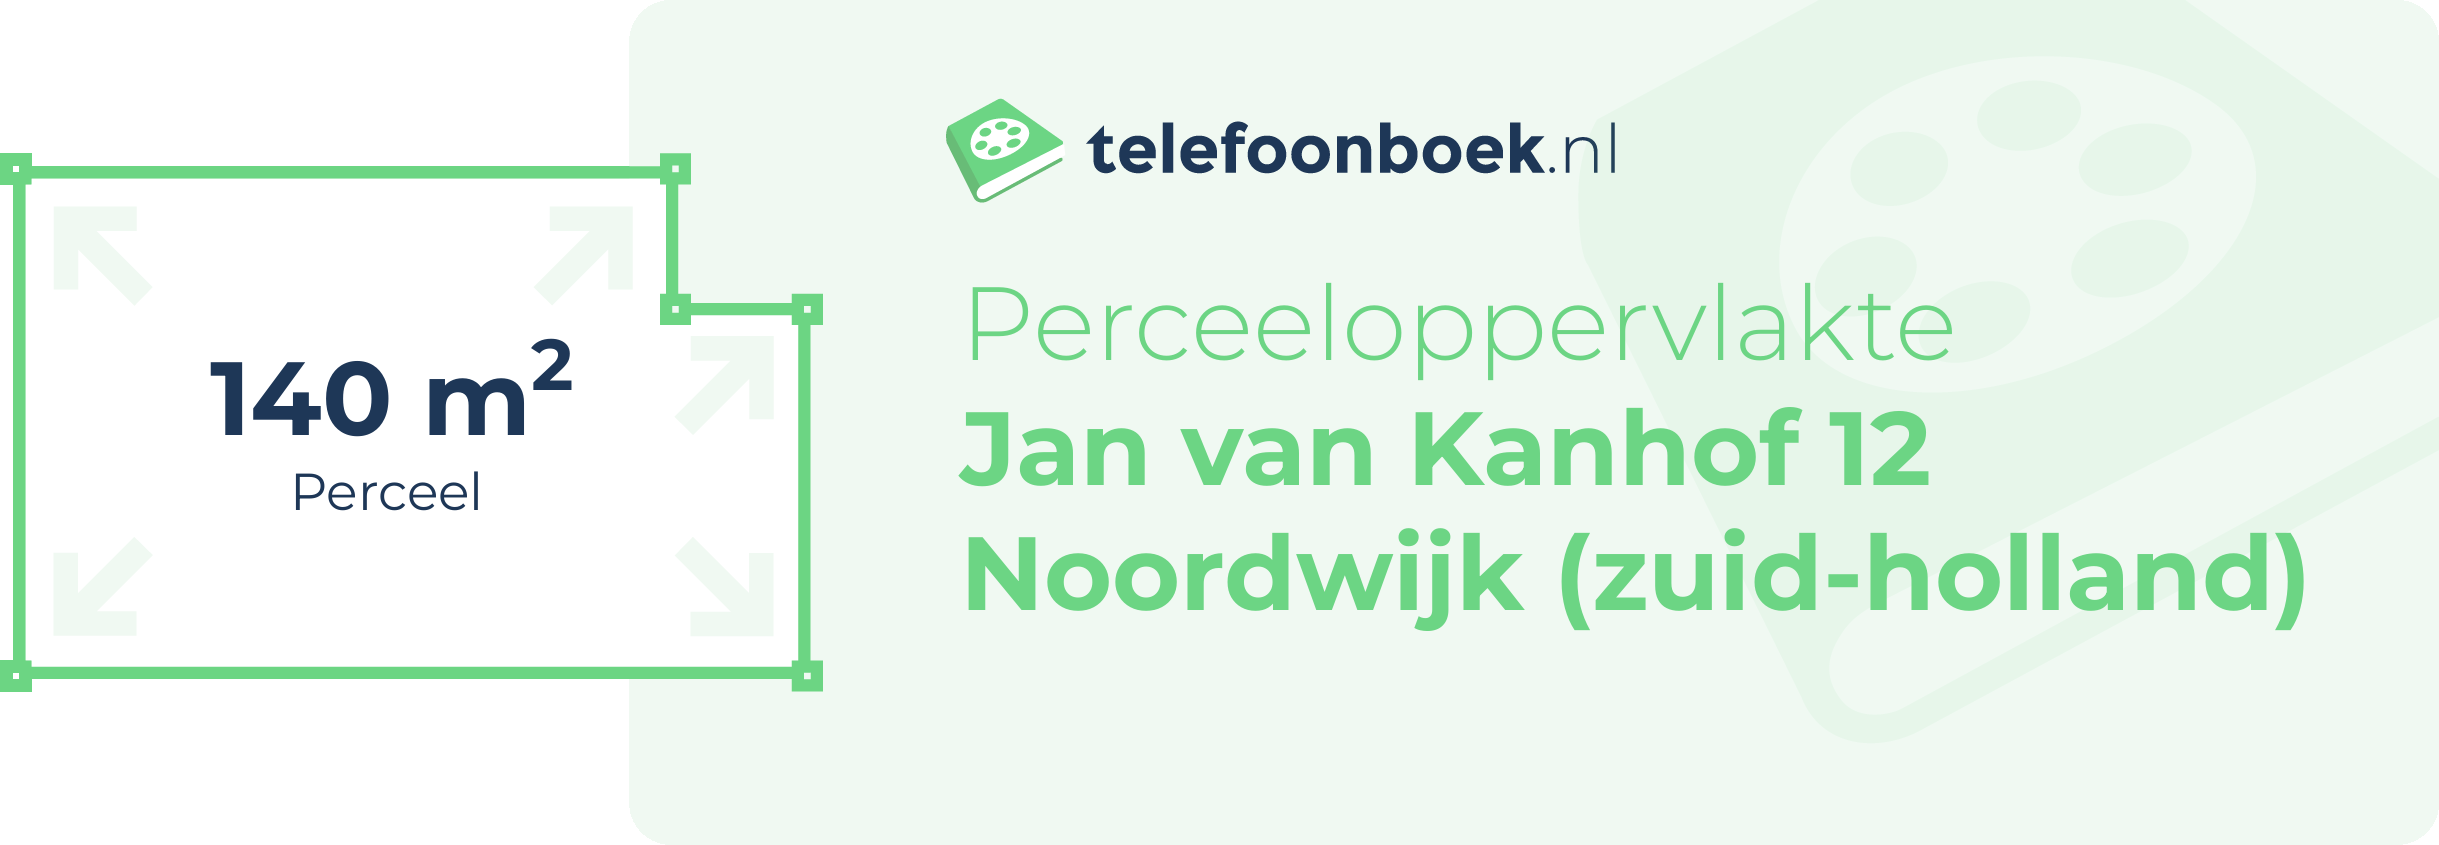 Perceeloppervlakte Jan Van Kanhof 12 Noordwijk (Zuid-Holland)